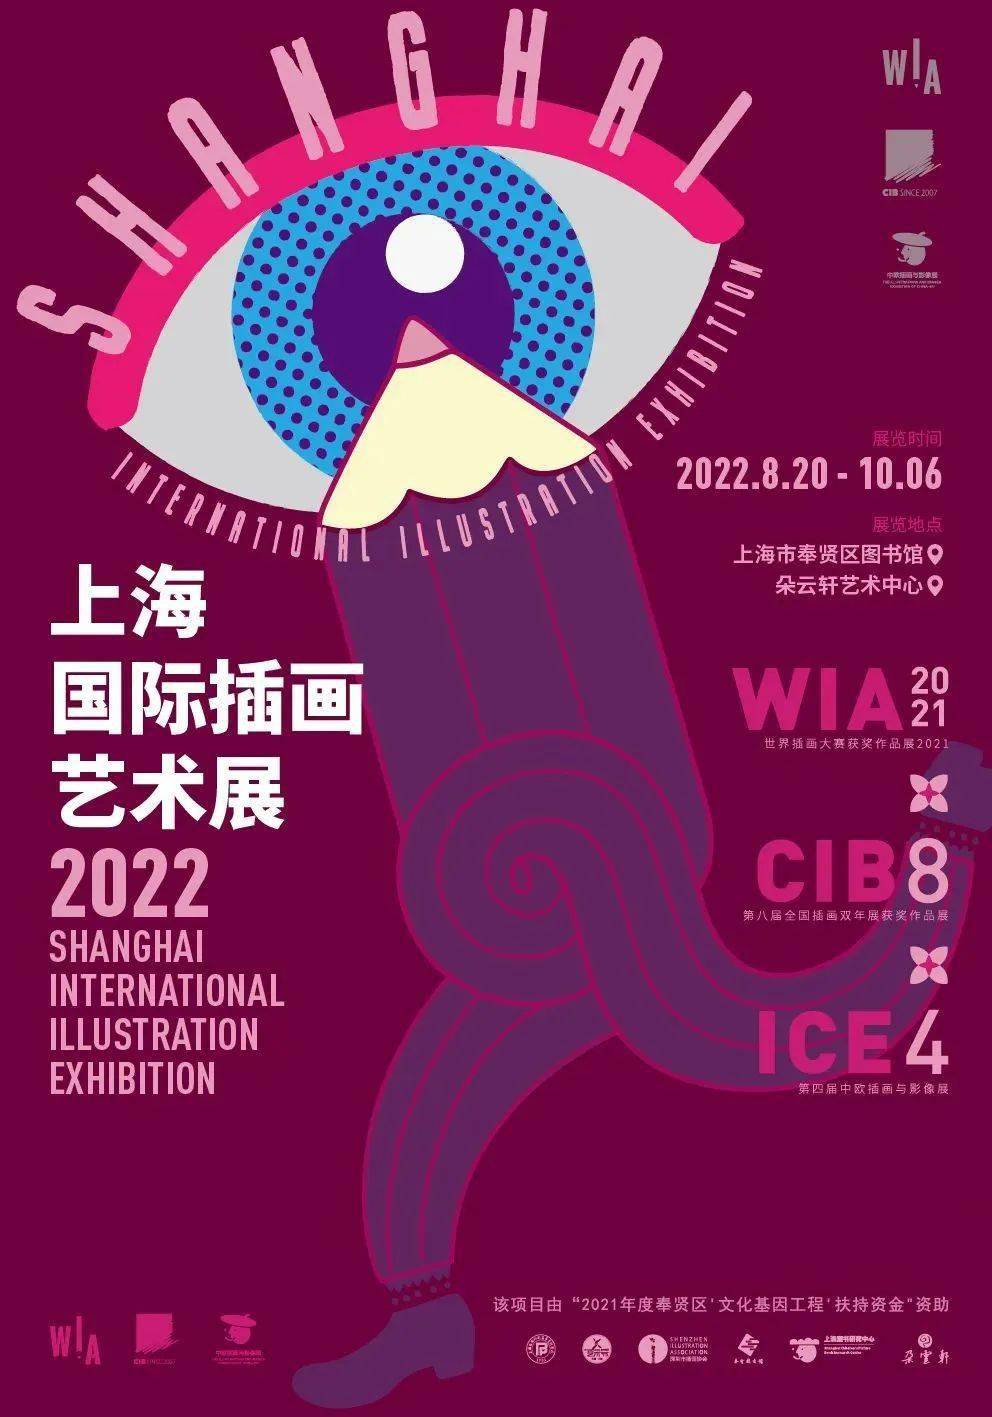 贤城资讯2022上海国际插画艺术展将于本月震撼登陆魔都来到奉贤